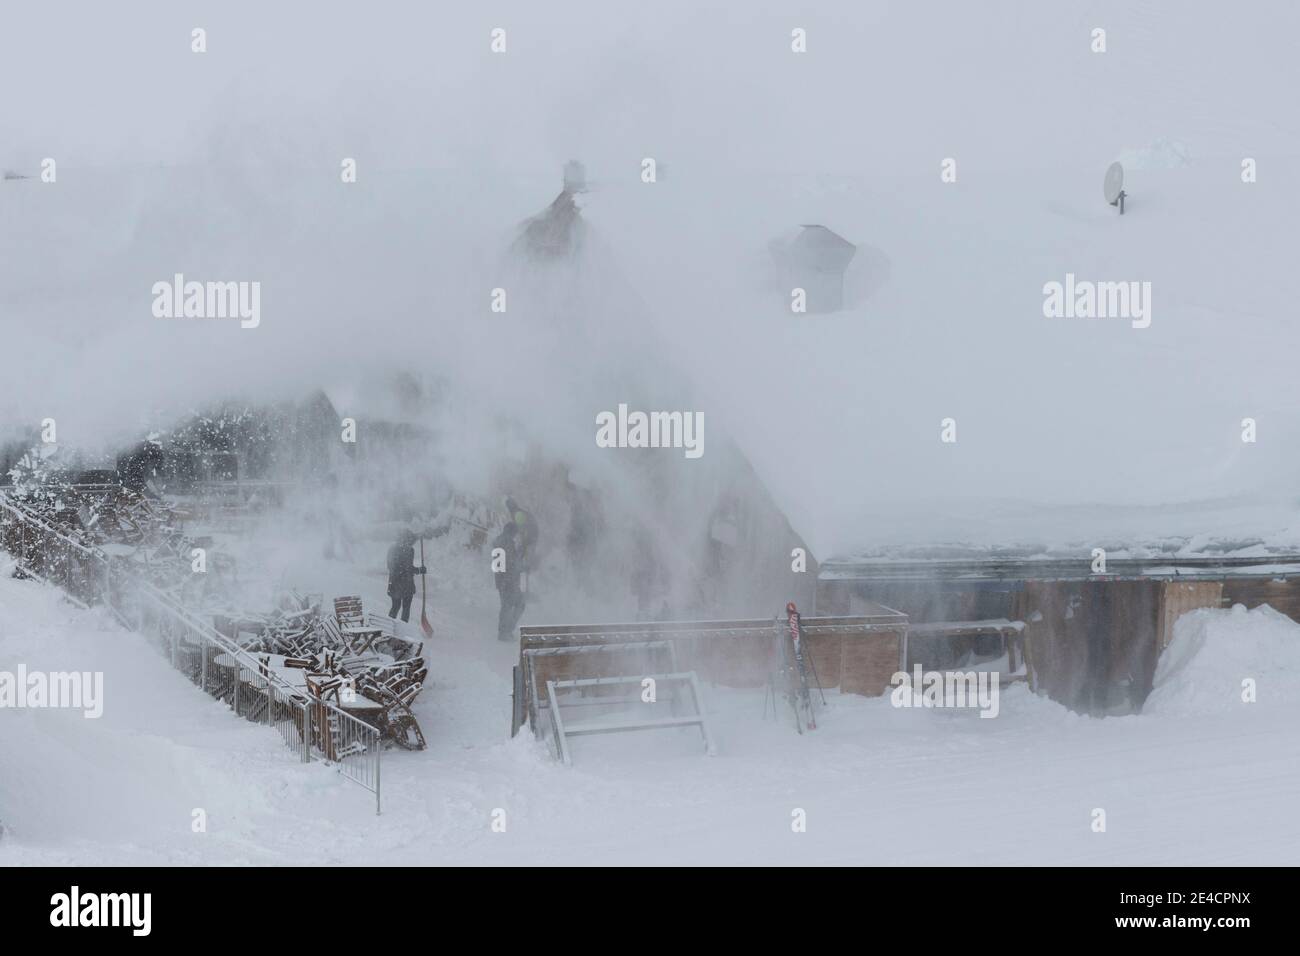 Austria, Tyrol, Ischgl, Switzerland, Graubünden, Samnaun, clearing snow on Alp Bella Stock Photo